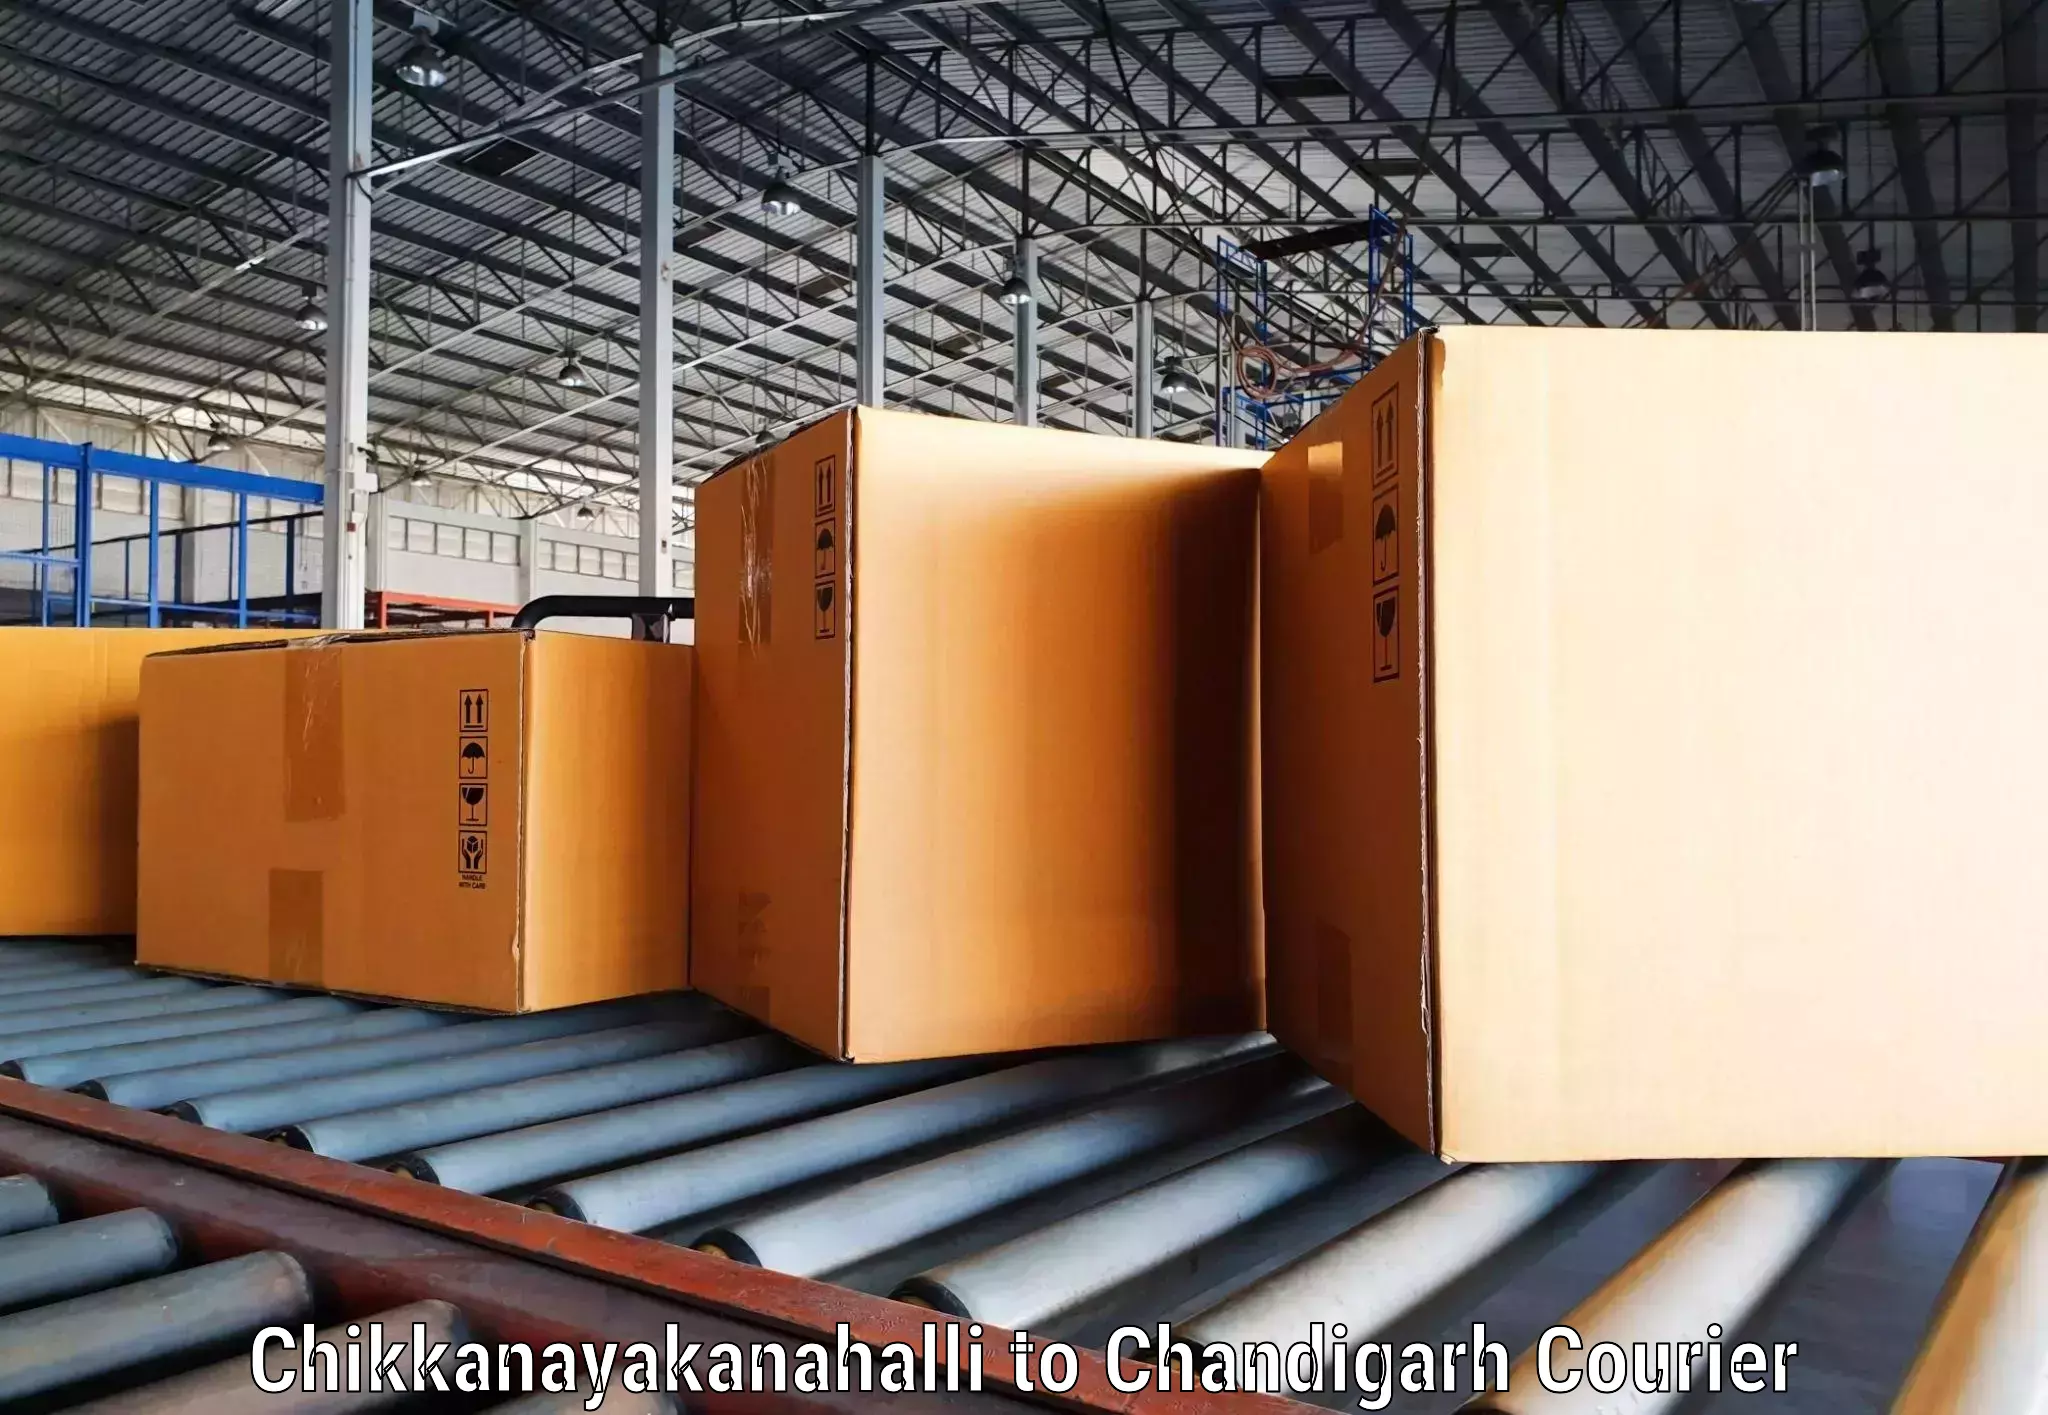 Diverse delivery methods Chikkanayakanahalli to Chandigarh